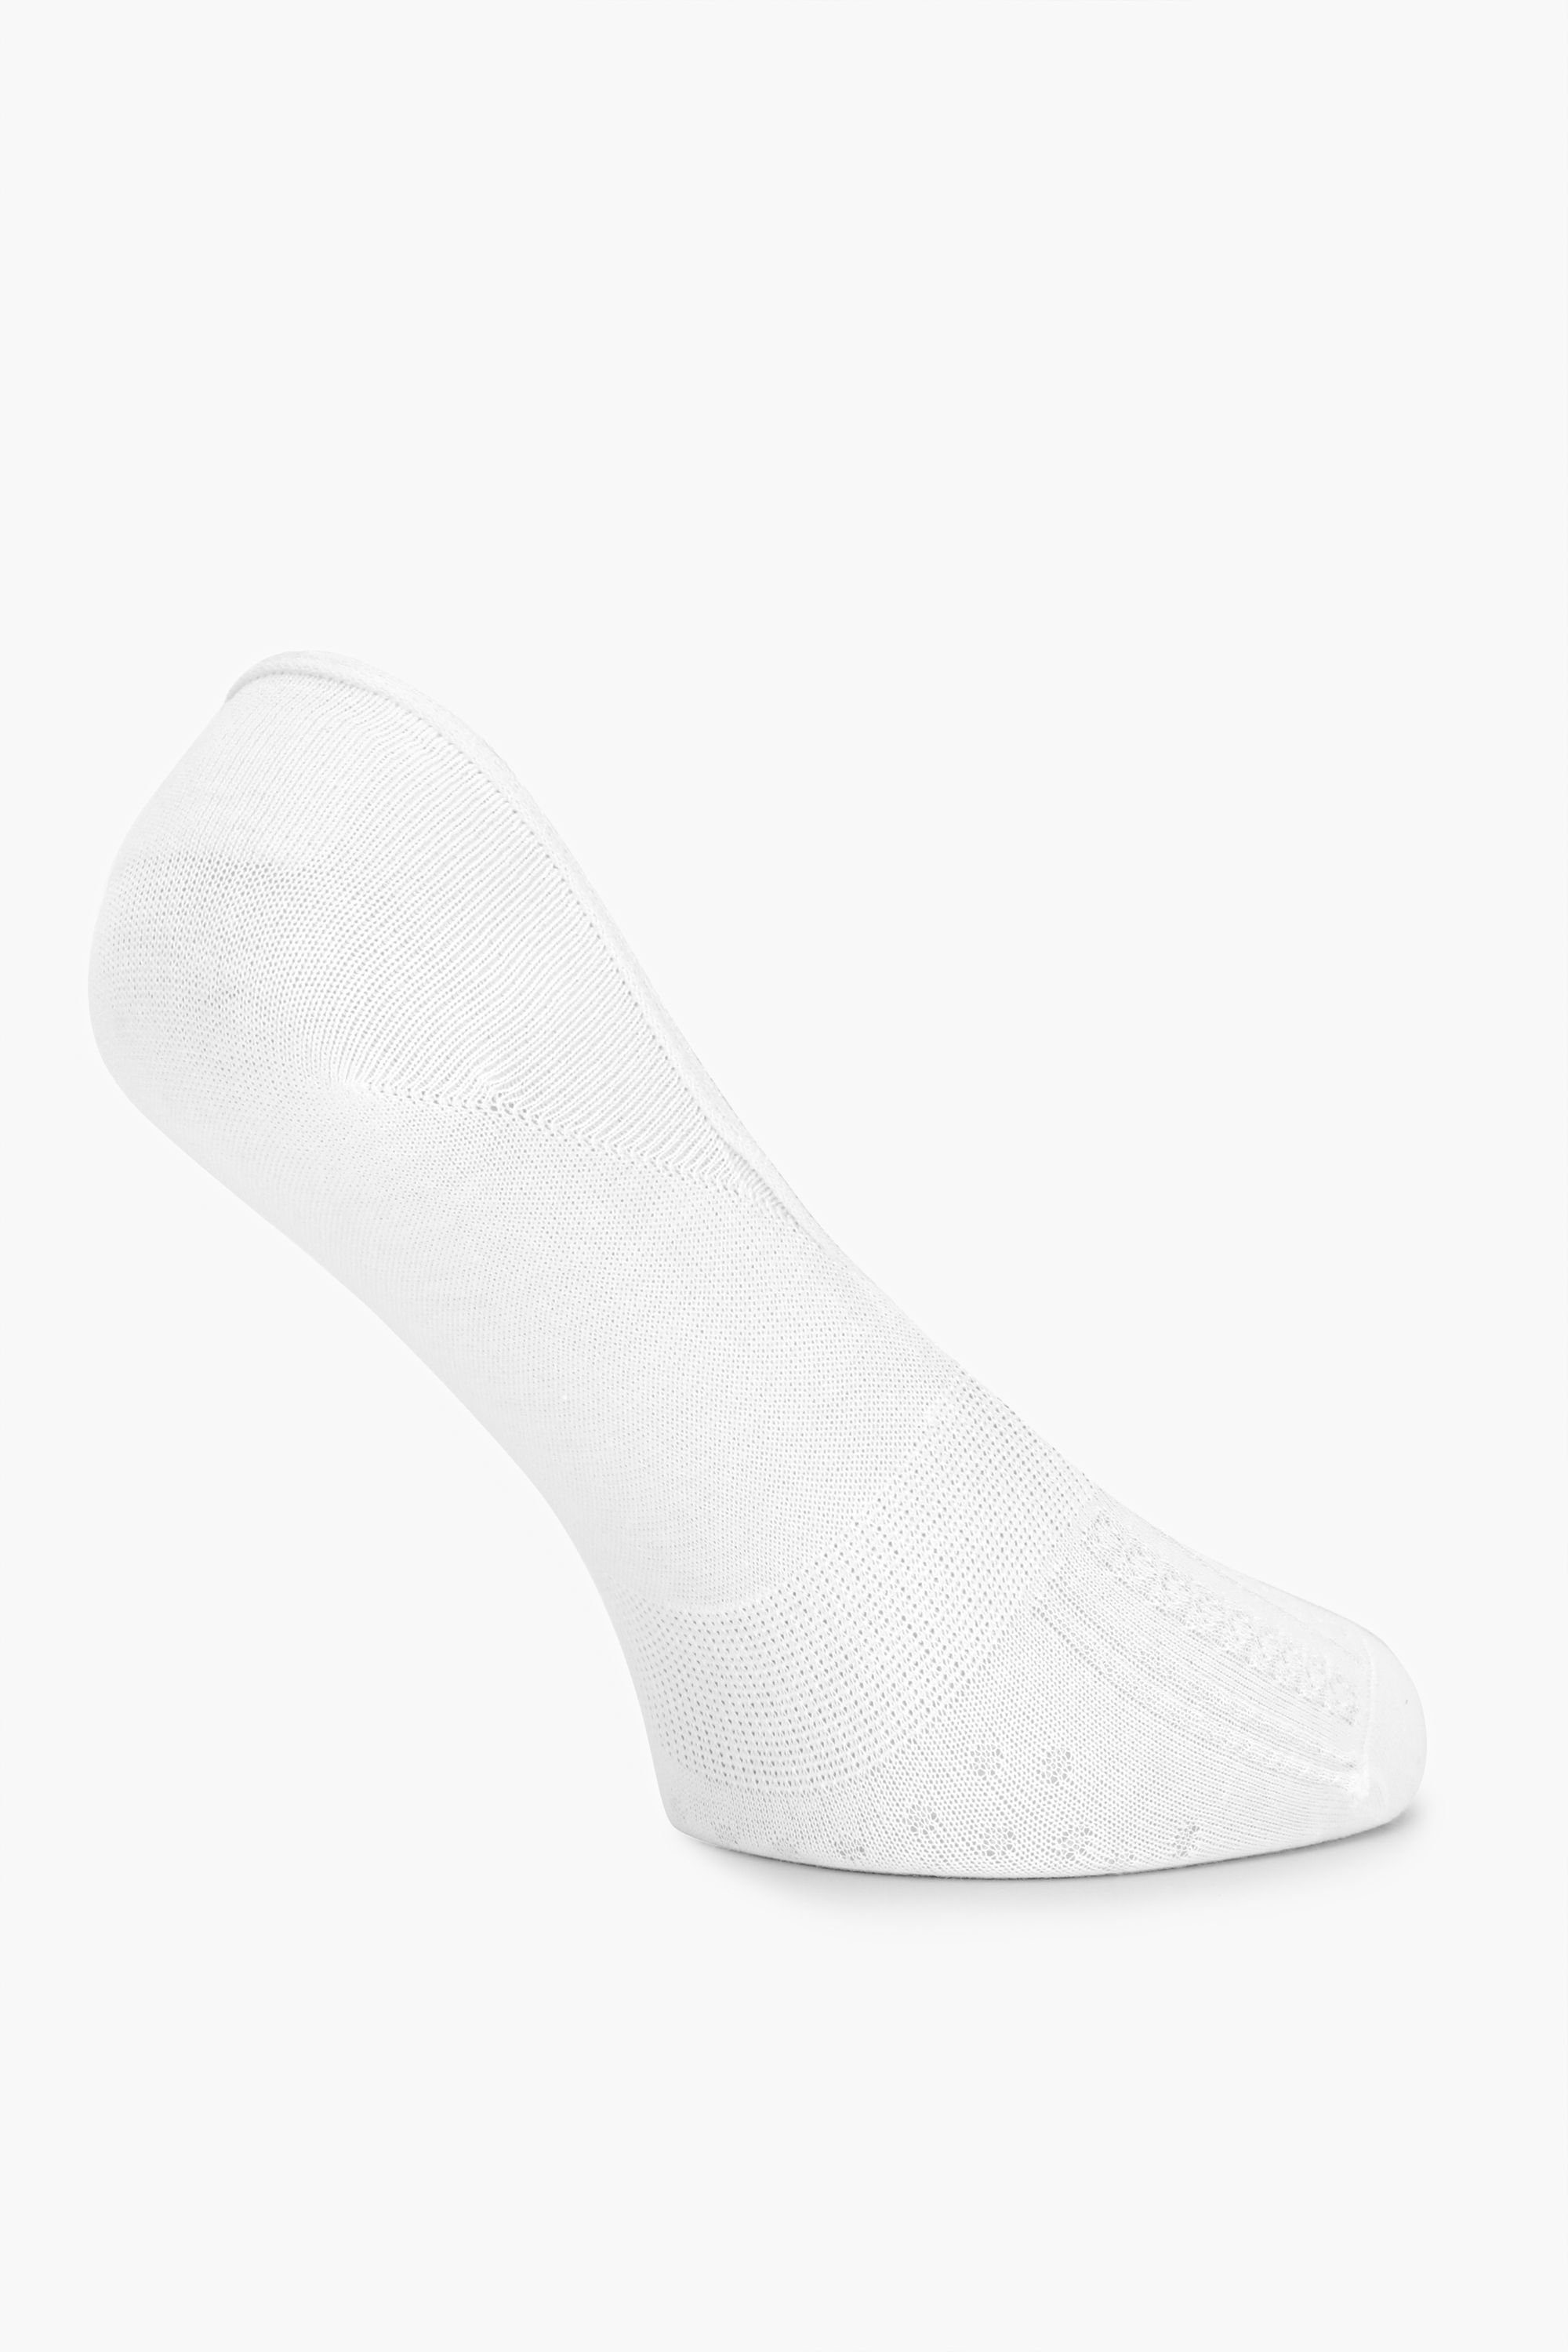 MSGI034 Sneaker Merry Style Socken Damen Weiß Socken